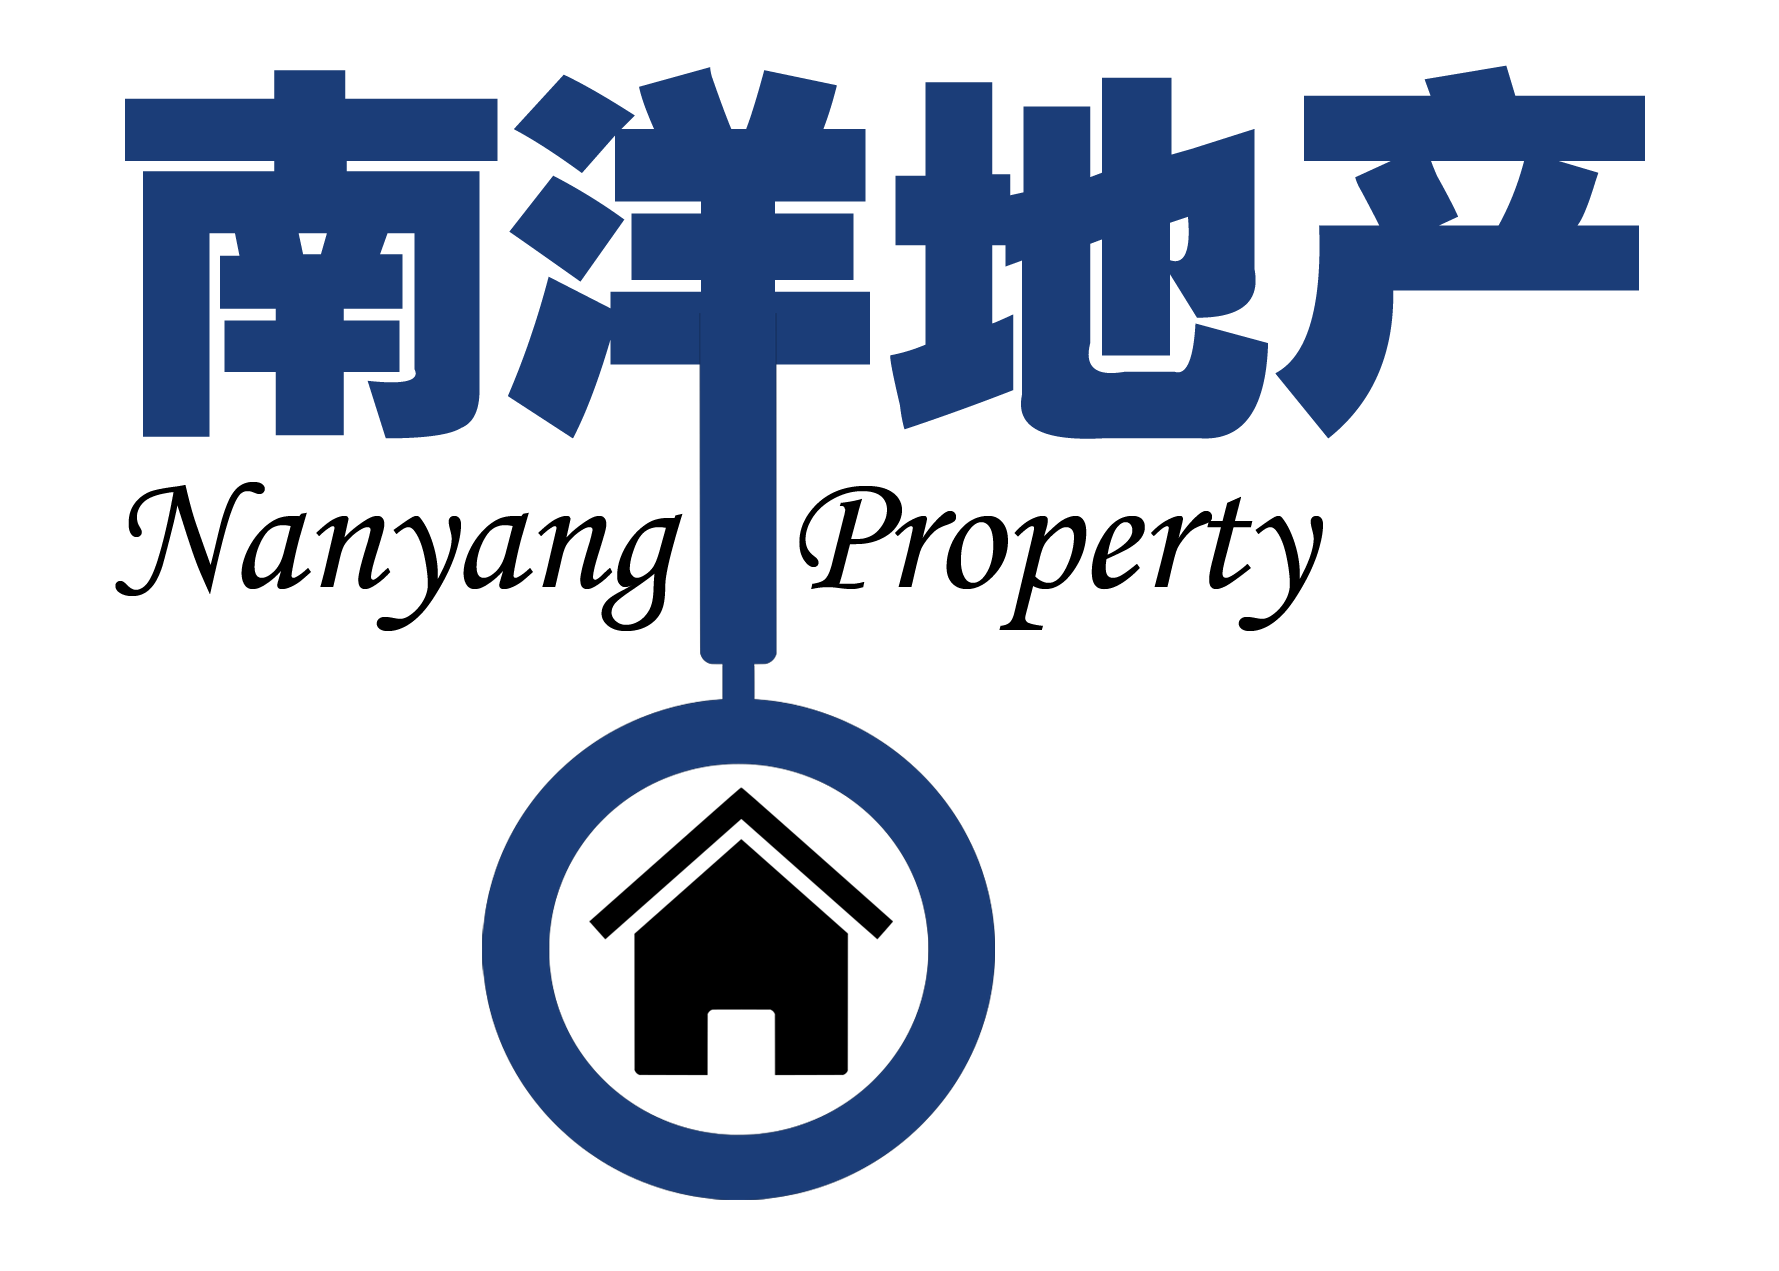 property enanyang